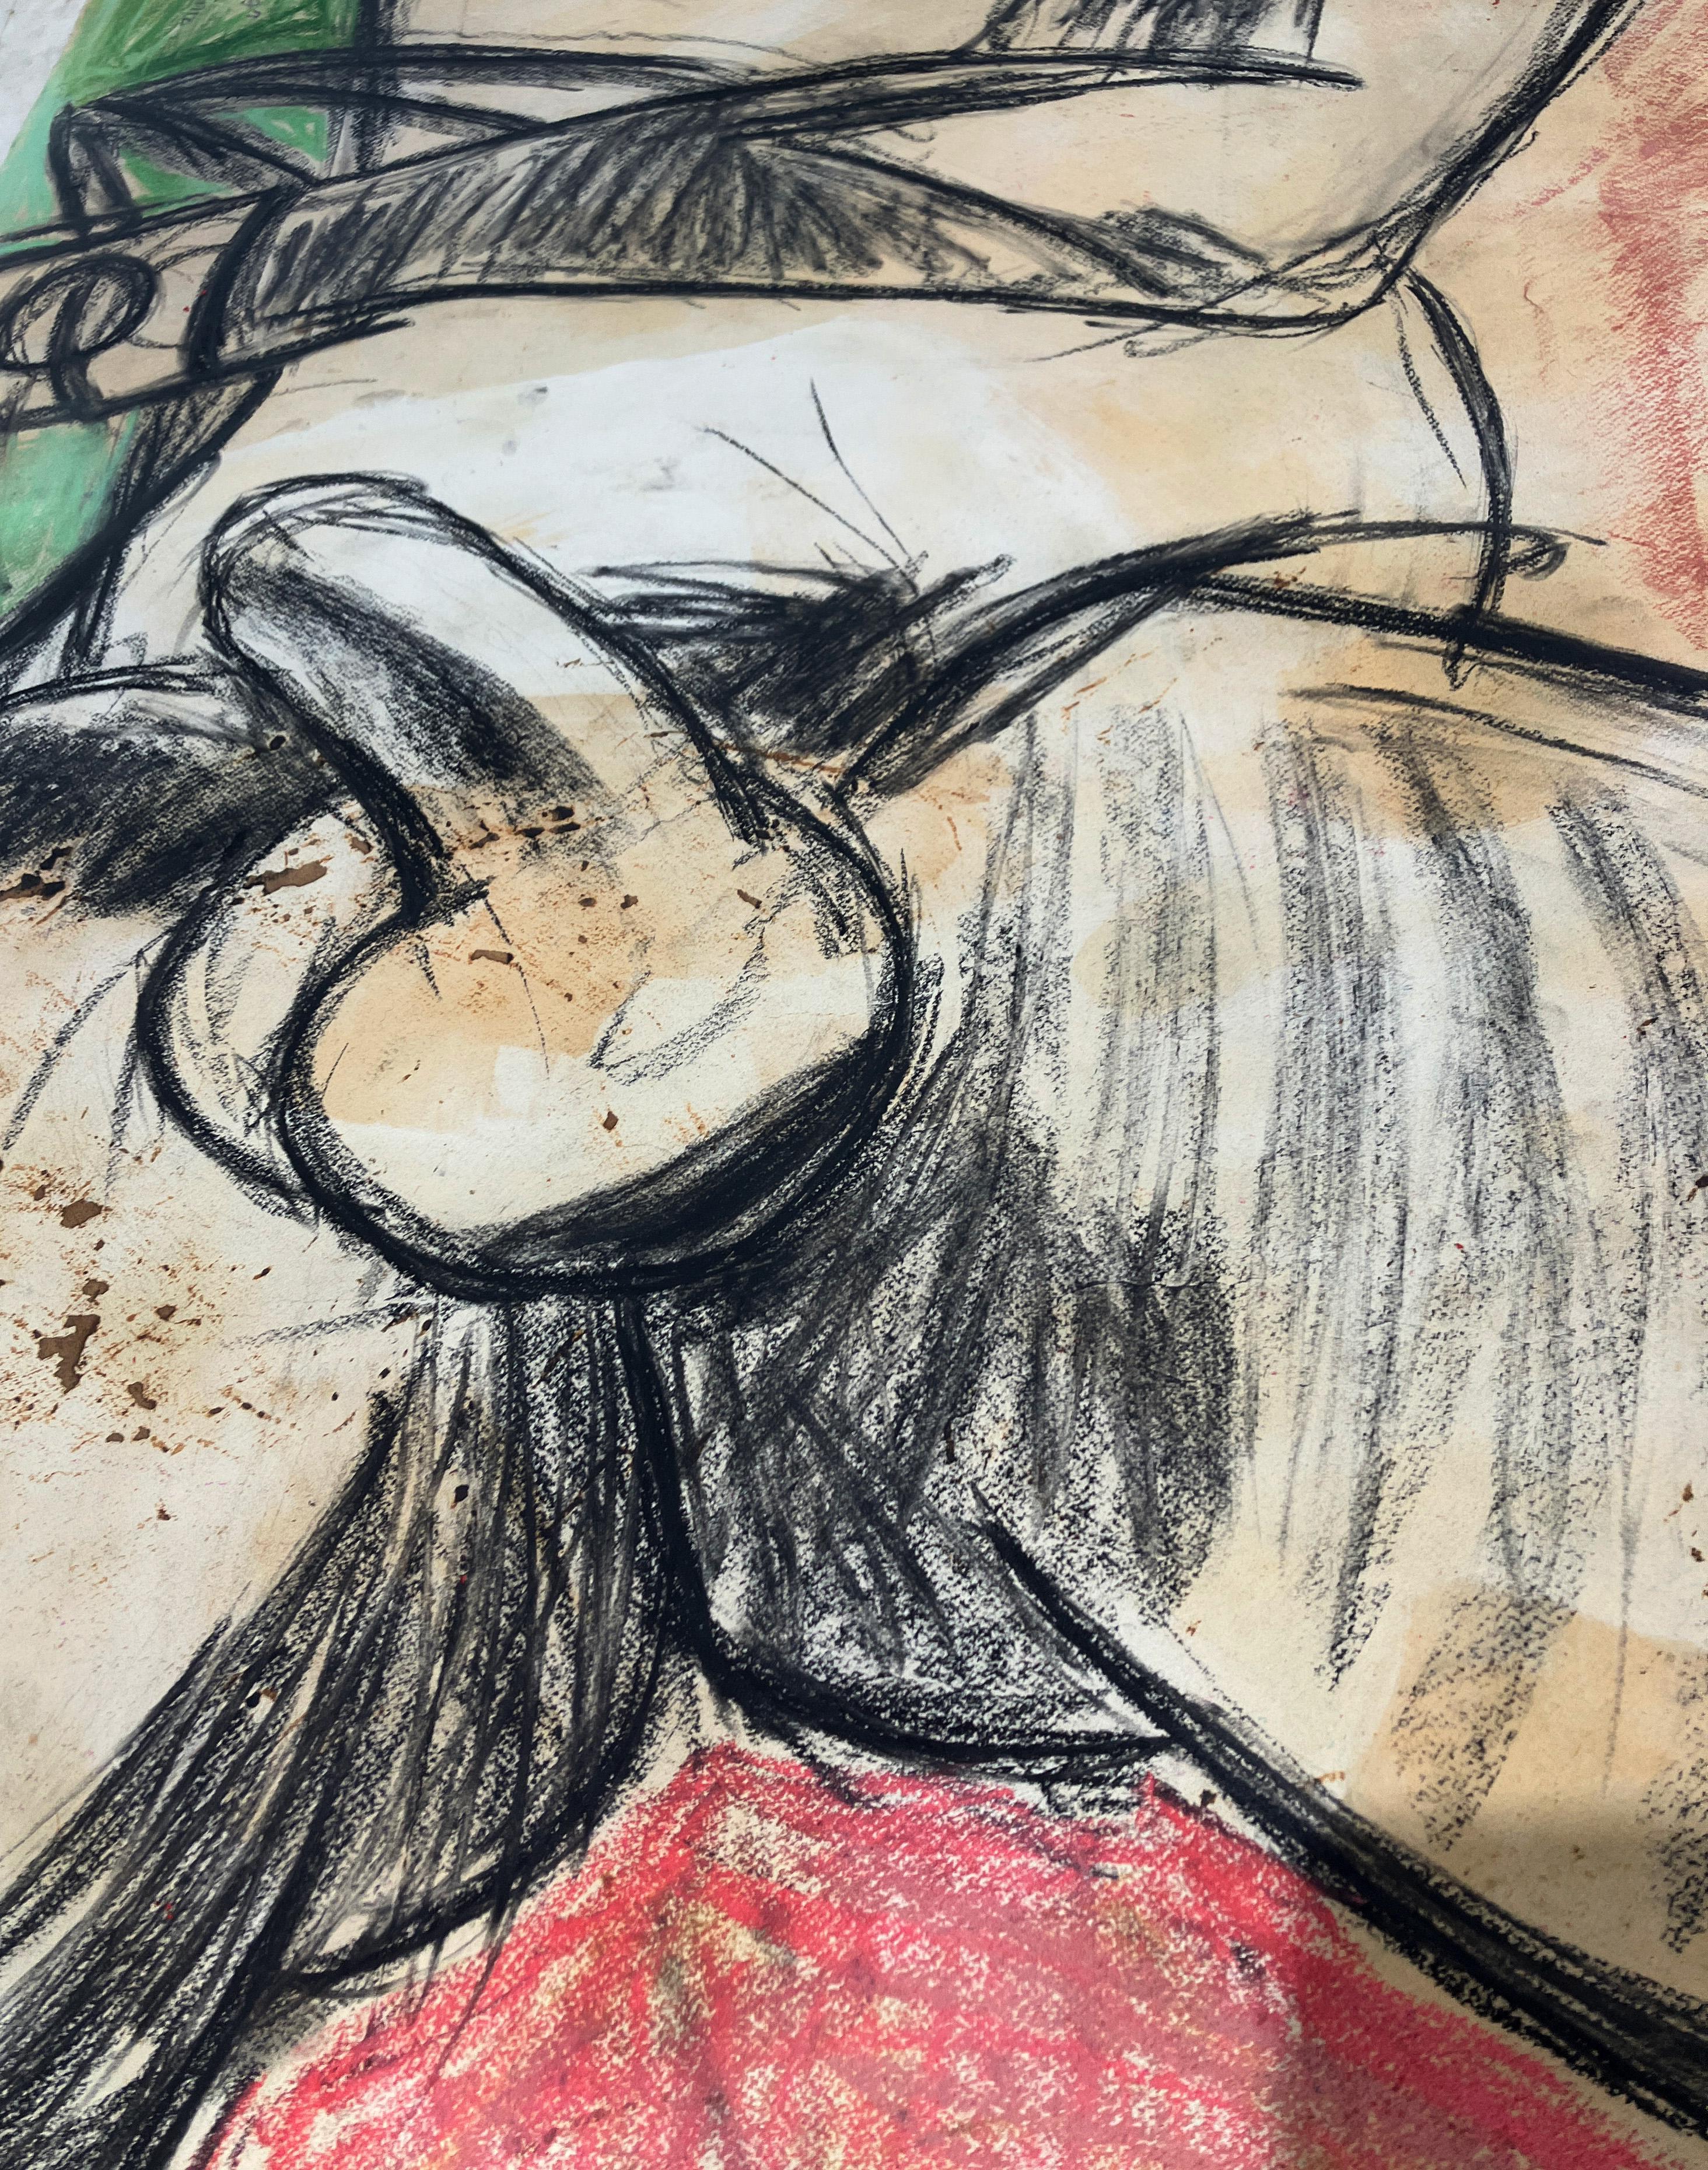 Desnudo con medias, sábado 4 de junio, 2016 par Celso Castro-Daza
Pastel et crayon ou papier d'archivage
Taille de l'image : 59 H in. x 40 in. W 

Au dos du tableau : 
Portrait figuratif au crayon et à l'aquarelle, sans date
Taille de l'image : 40 H